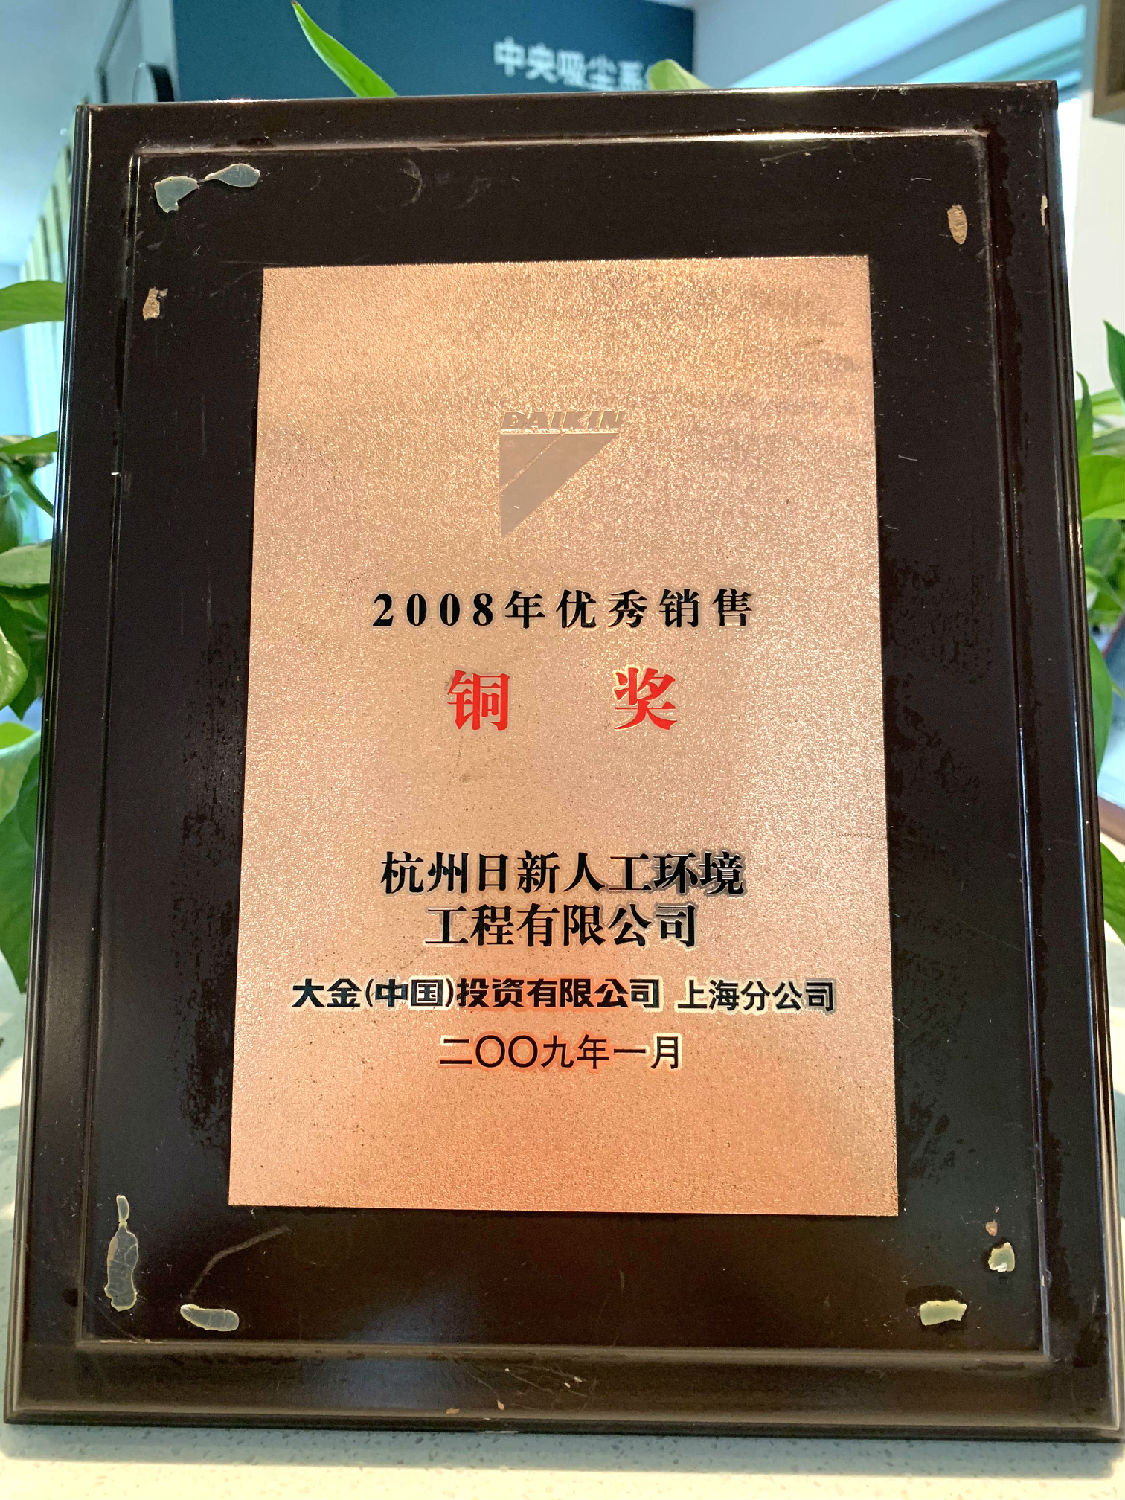 2008年日新环境获得大金空调颁发的“优秀销售铜奖”